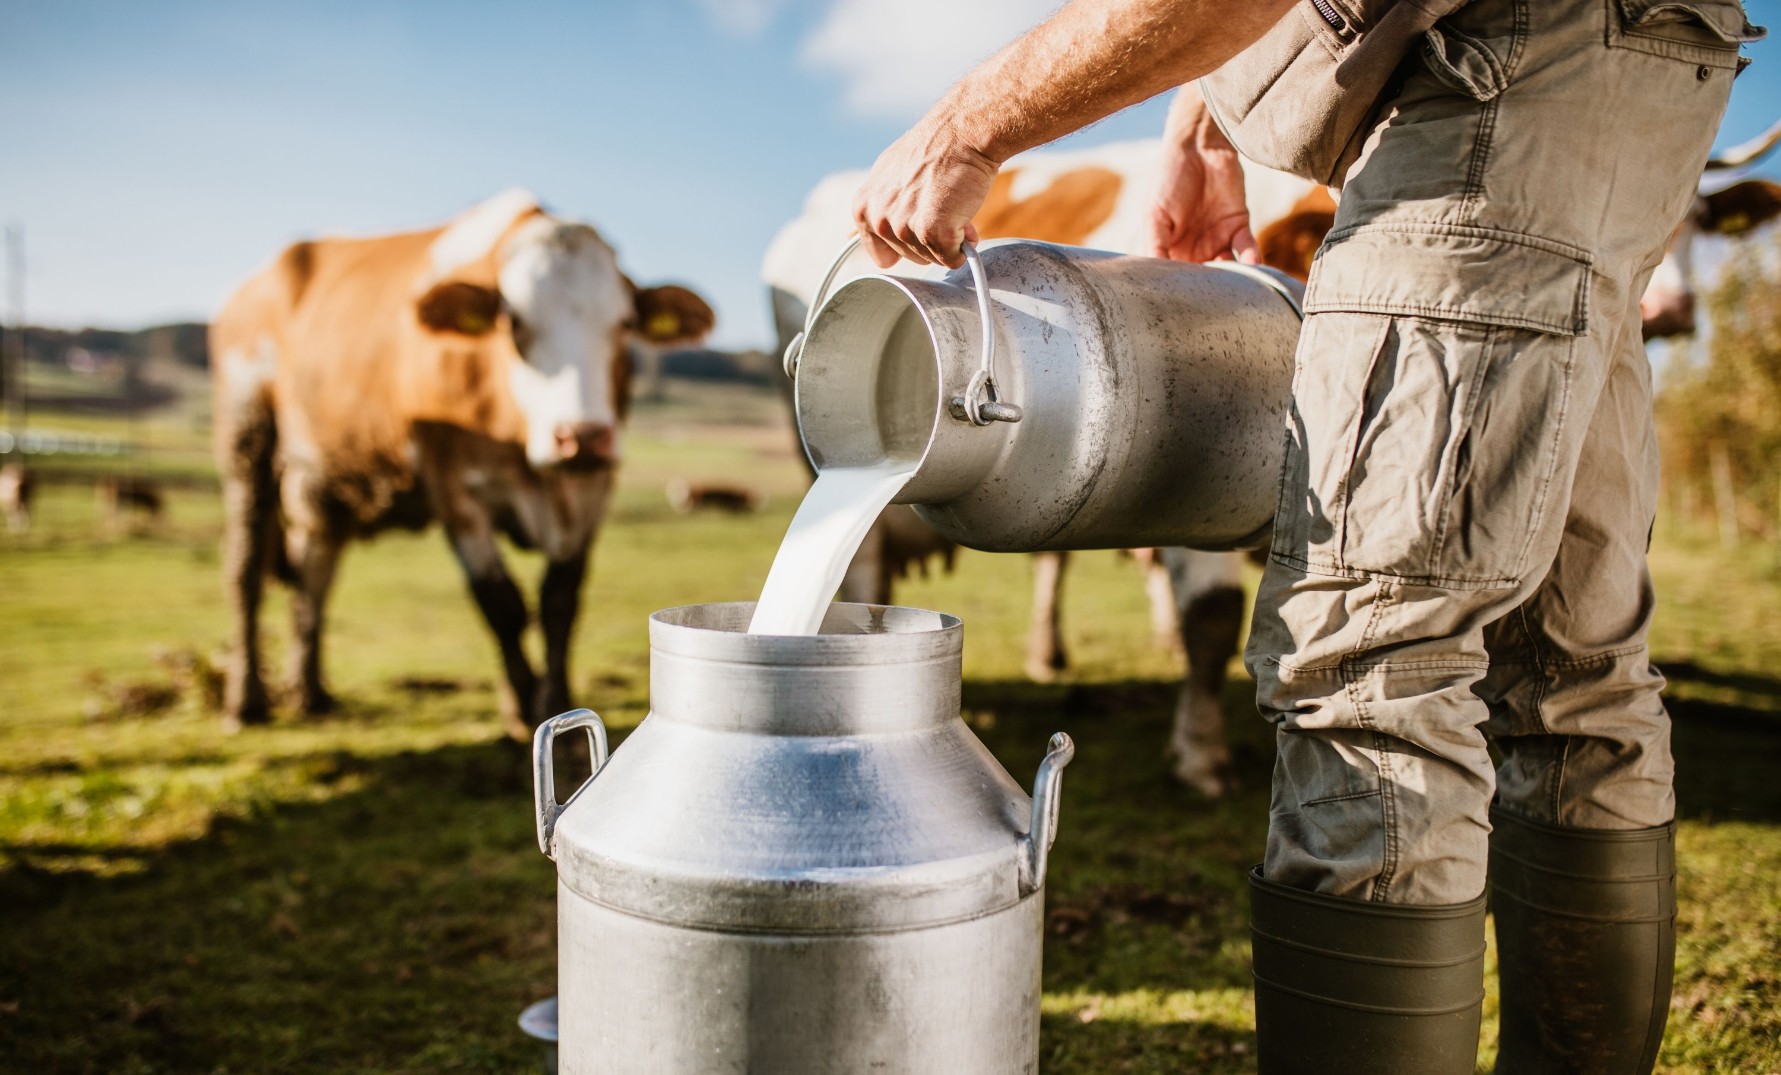 trendovi u proizvodnji mlijeka proizvodnja mlijeka